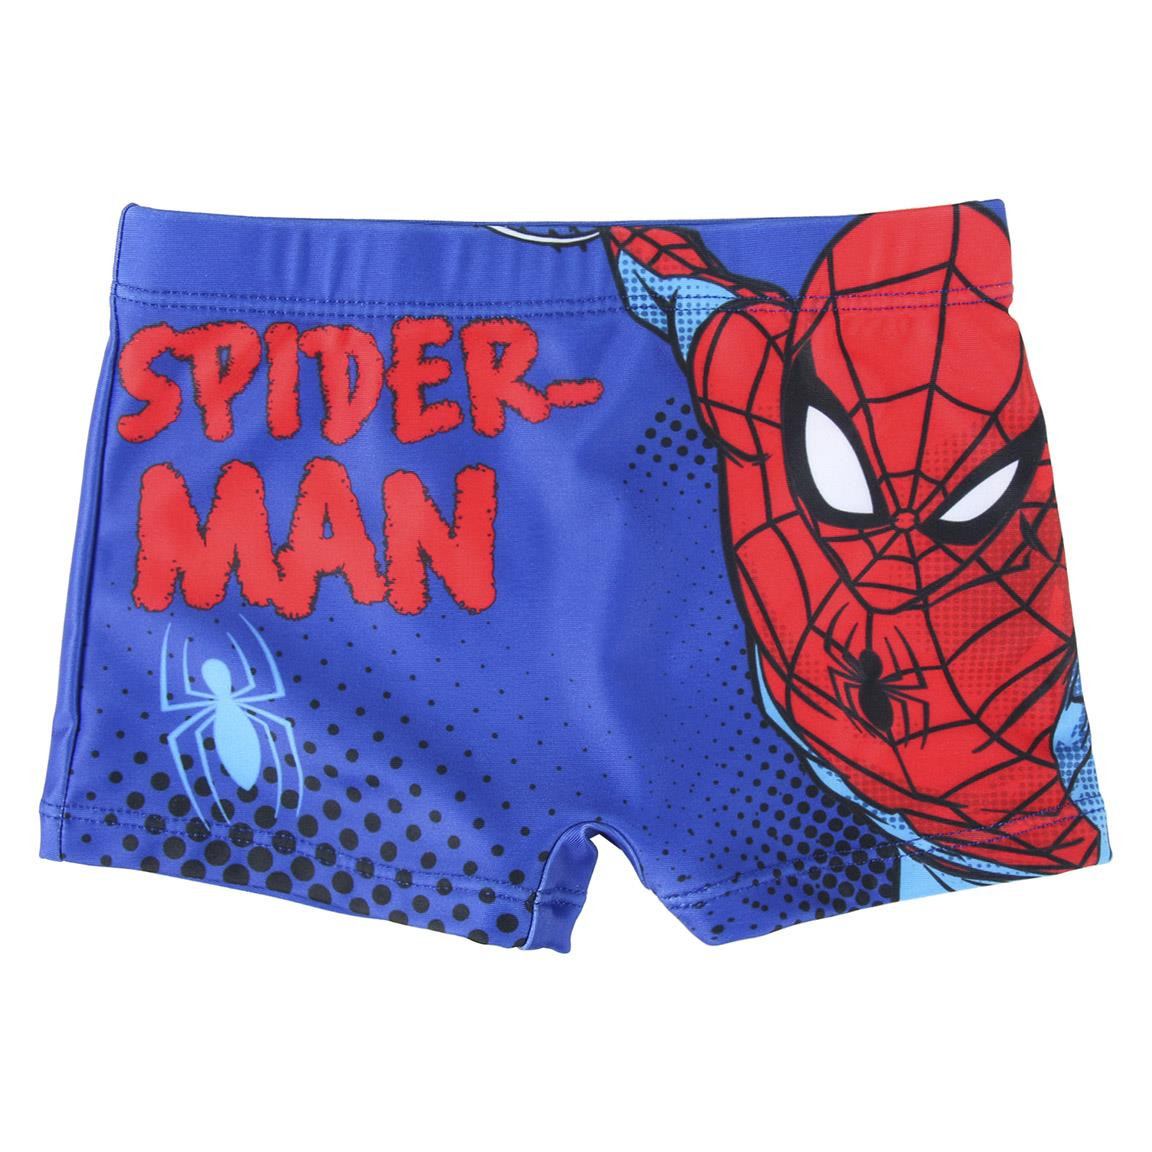 Bañador Spiderman por 9,95€ – LaFrikileria.com